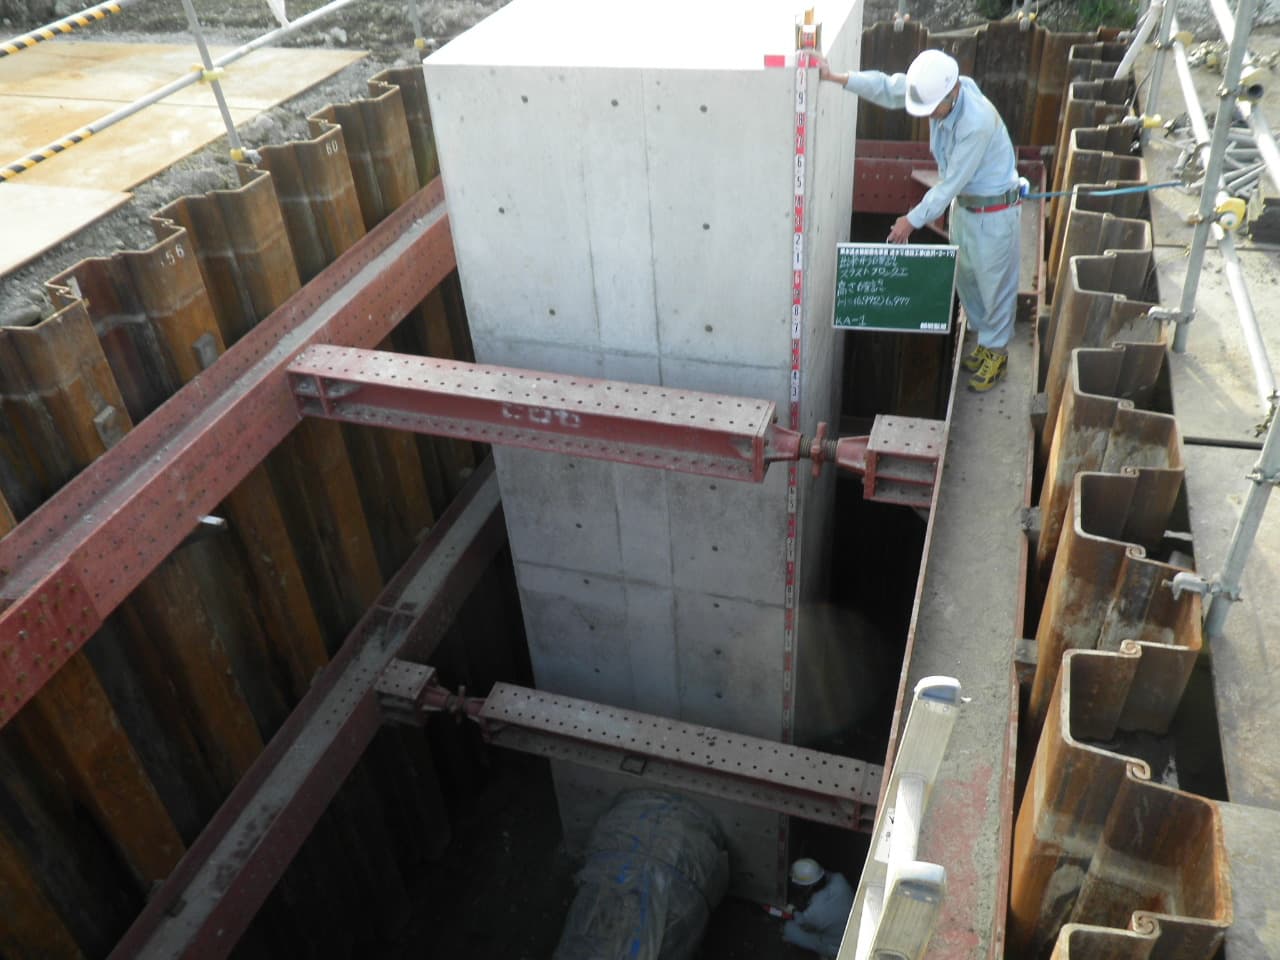 県水送水管耐震化事業　送水管埋設工事（金沢－２－１７）